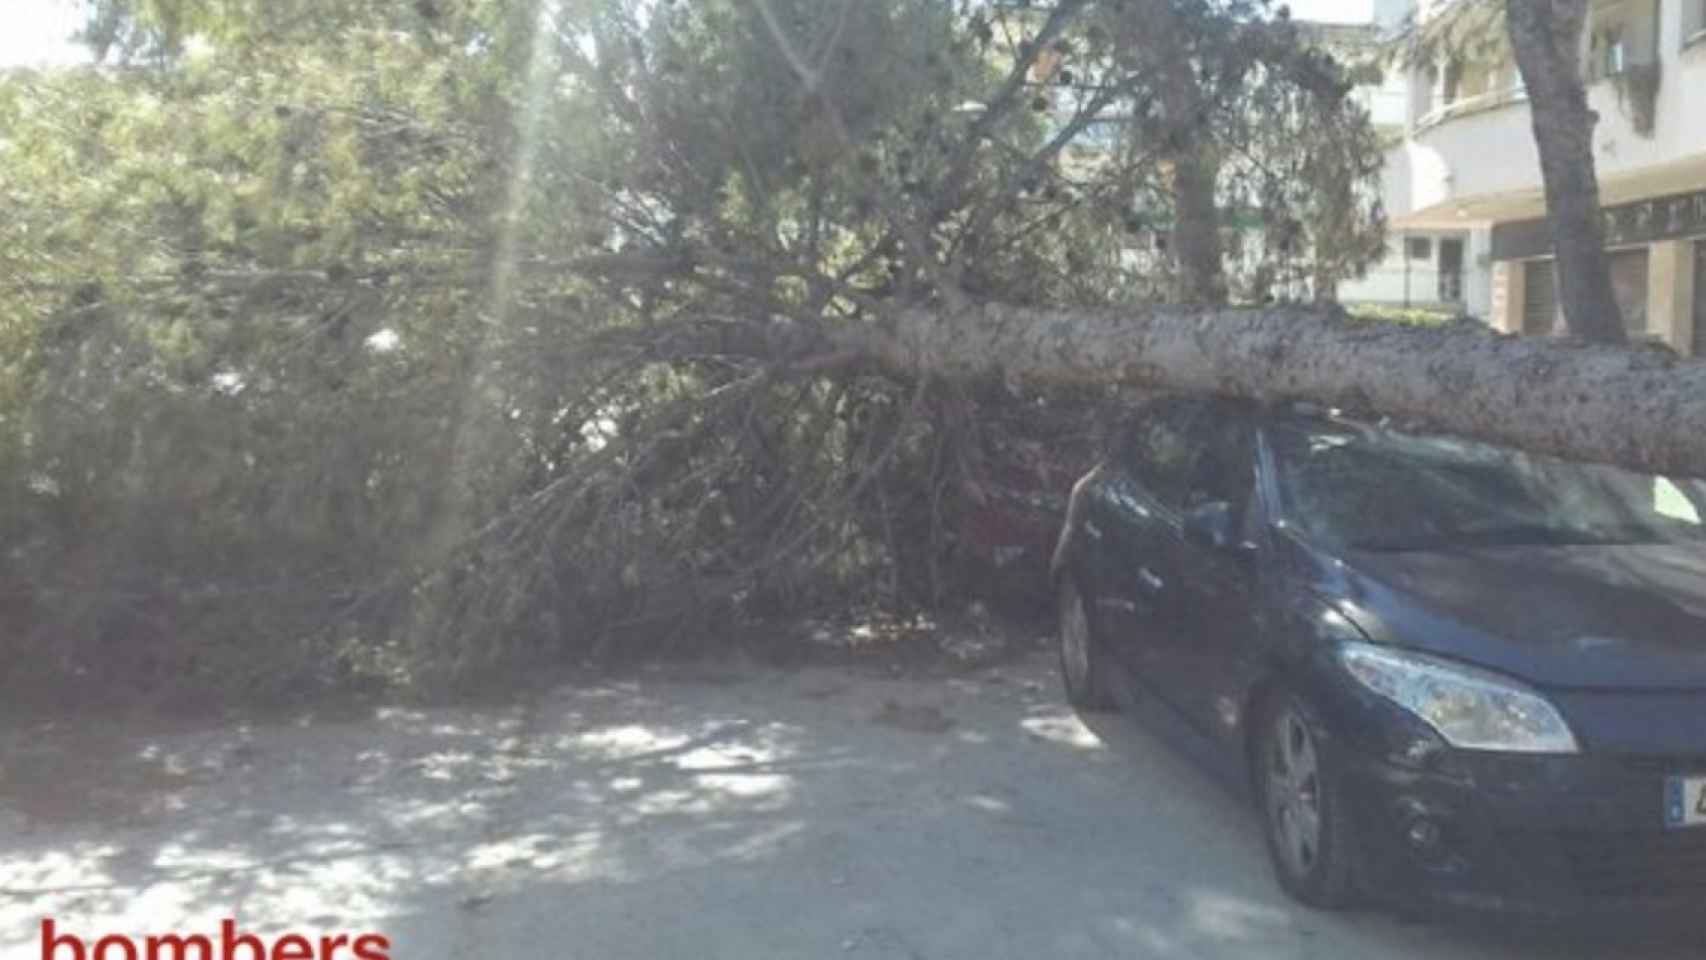 Una foto de un árbol caído encima de un vehículo estacionado